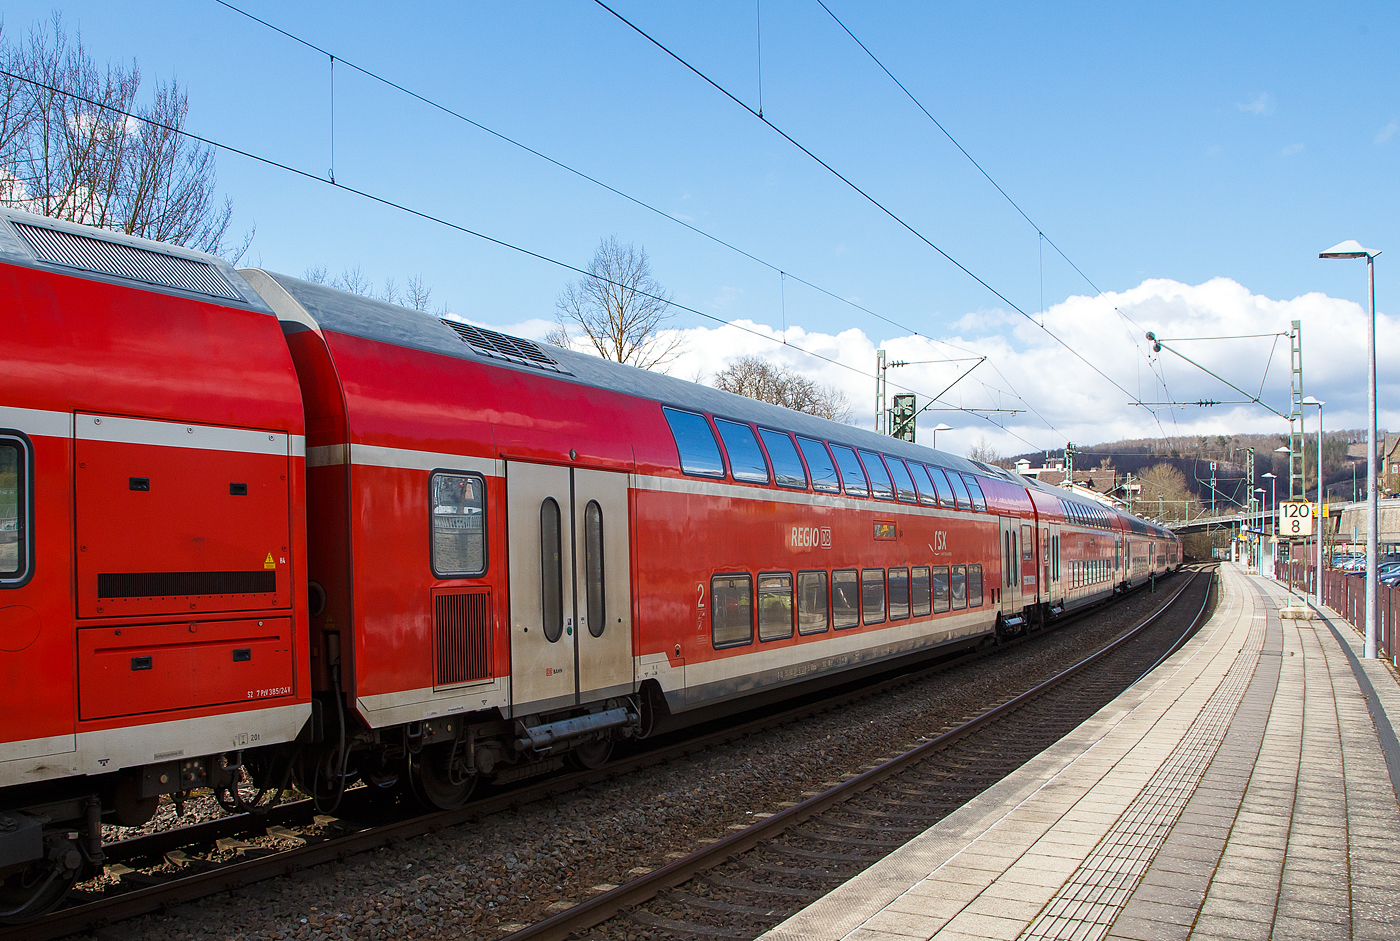 2. Klasse klimatisierter Doppelstock-Reisezugwagen (Hocheinstiegs-Dosto) D-DB 50 80 26-81 269-5, der Gattung DBpza 781.2, vom rsx - Rhein-Sieg-Express der DB Regio NRW (Aachen), am 19.03.2021 im Zugverband vom RE 9 in Kirchen (Sieg). 

Der Wagen wurde 2010 von Bombardier in Görlitz (ex DWA - Deutsche Waggonbau AG gebaut.

TECHNISCHE DATEN:
Gattung/Bauart: DBpza 781.2
Spurweite: 1.435 mm
Anzahl der Achsen: 4
Länge über Puffer: 26.800 mm
Wagenkastenlänge: 26 400 mm
Wagenkastenbreite: 2.784 mm
Höhe über Schienenoberkante: 4.631 mm
Drehzapfenabstand: 20.000 mm
Achsstand im Drehgestell: 2 500 mm
Drehgestellbauart:  Görlitz VIII
Leergewicht: 50 t
Höchstgeschwindigkeit: 160 km/h 
Sitzplätze: 142 in der 2. Klasse
Toiletten: 1, geschlossenes System
Einstieg: Hoch
Bremse: KE-R-A-Mg (D)
Heizung: Klimaes
Bemerkung : Autarke Videoüberwachung; uneingeschränkt dieselloktauglich